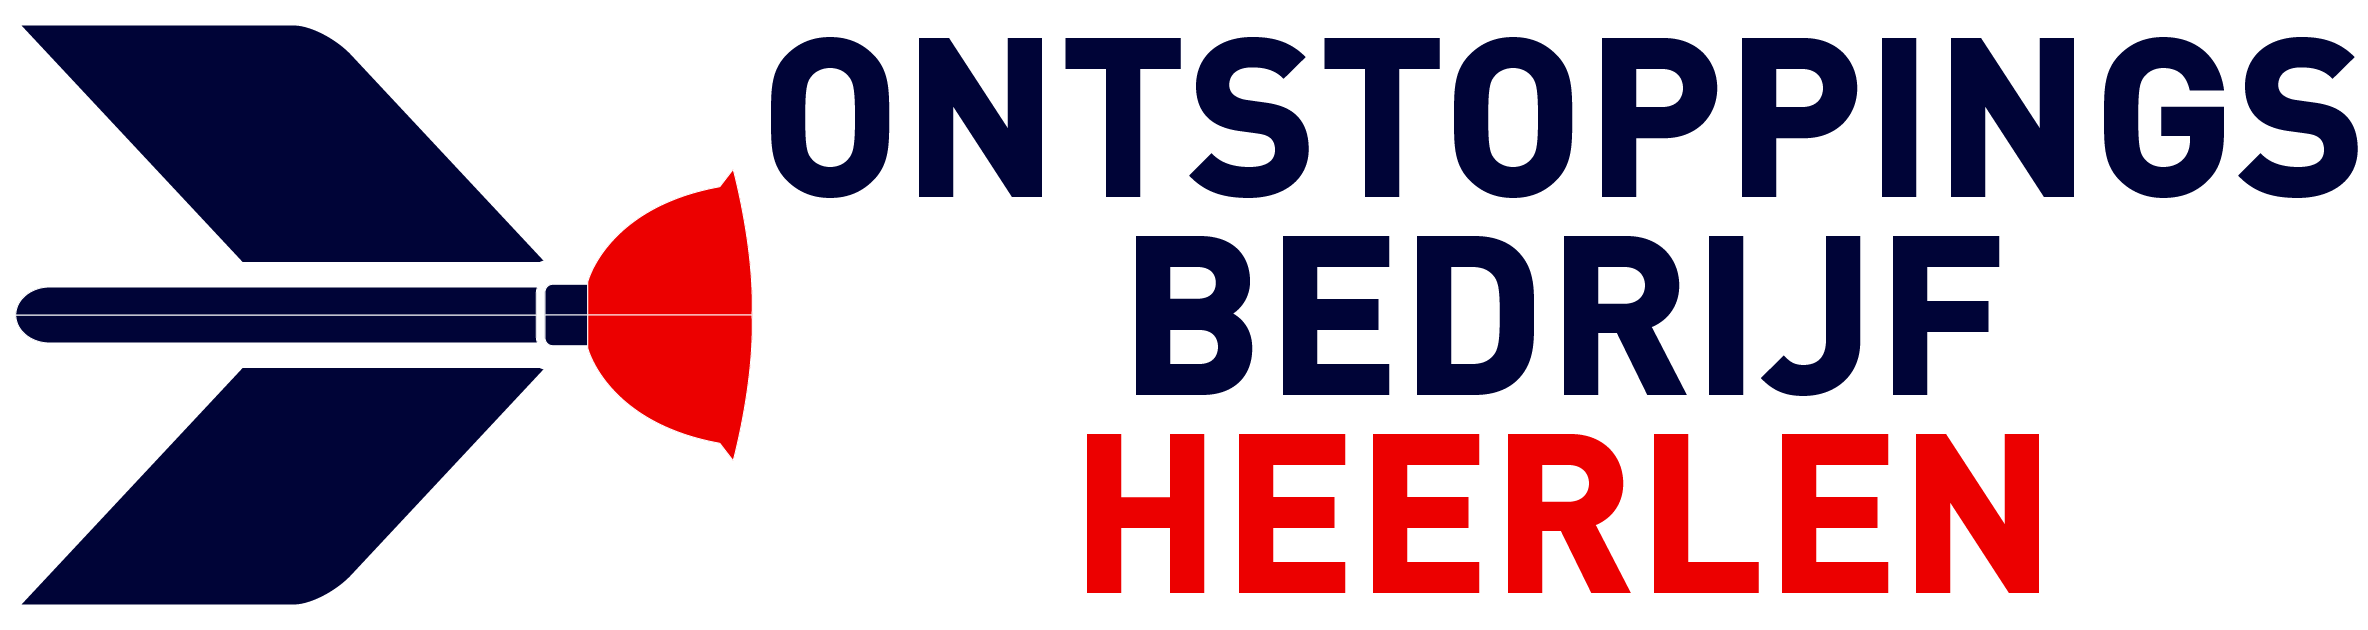 Ontstoppingsbedrijf Heerlen logo